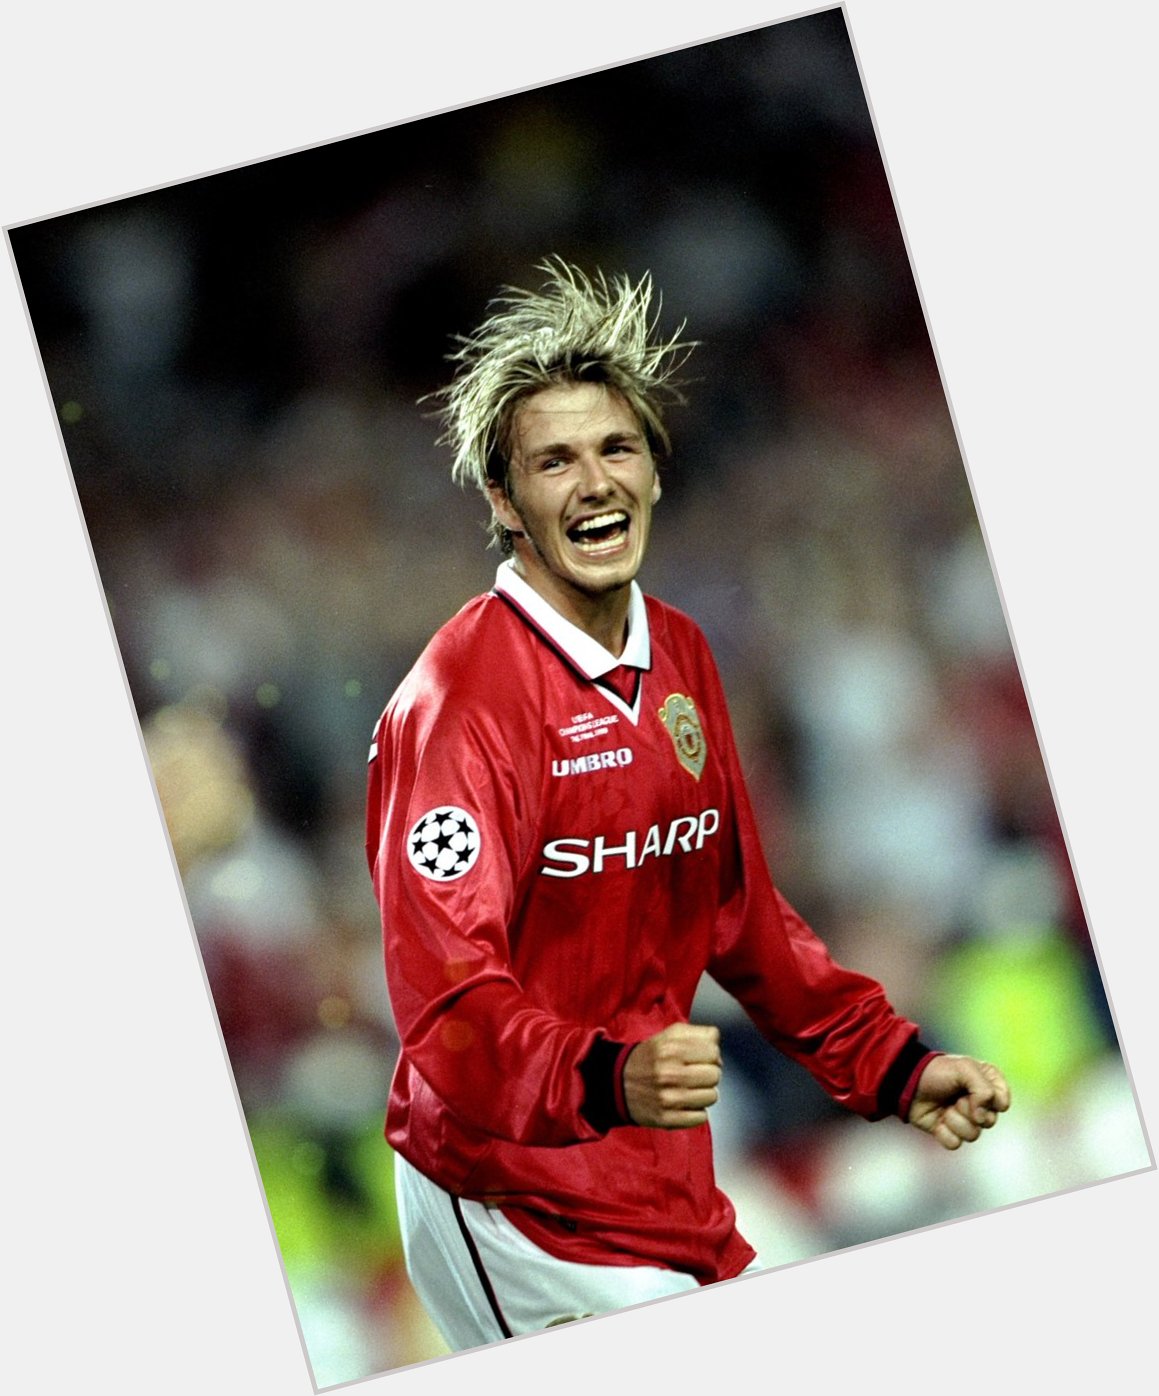 Wish winner & Manchester United legend David Beckham a happy birthday!    